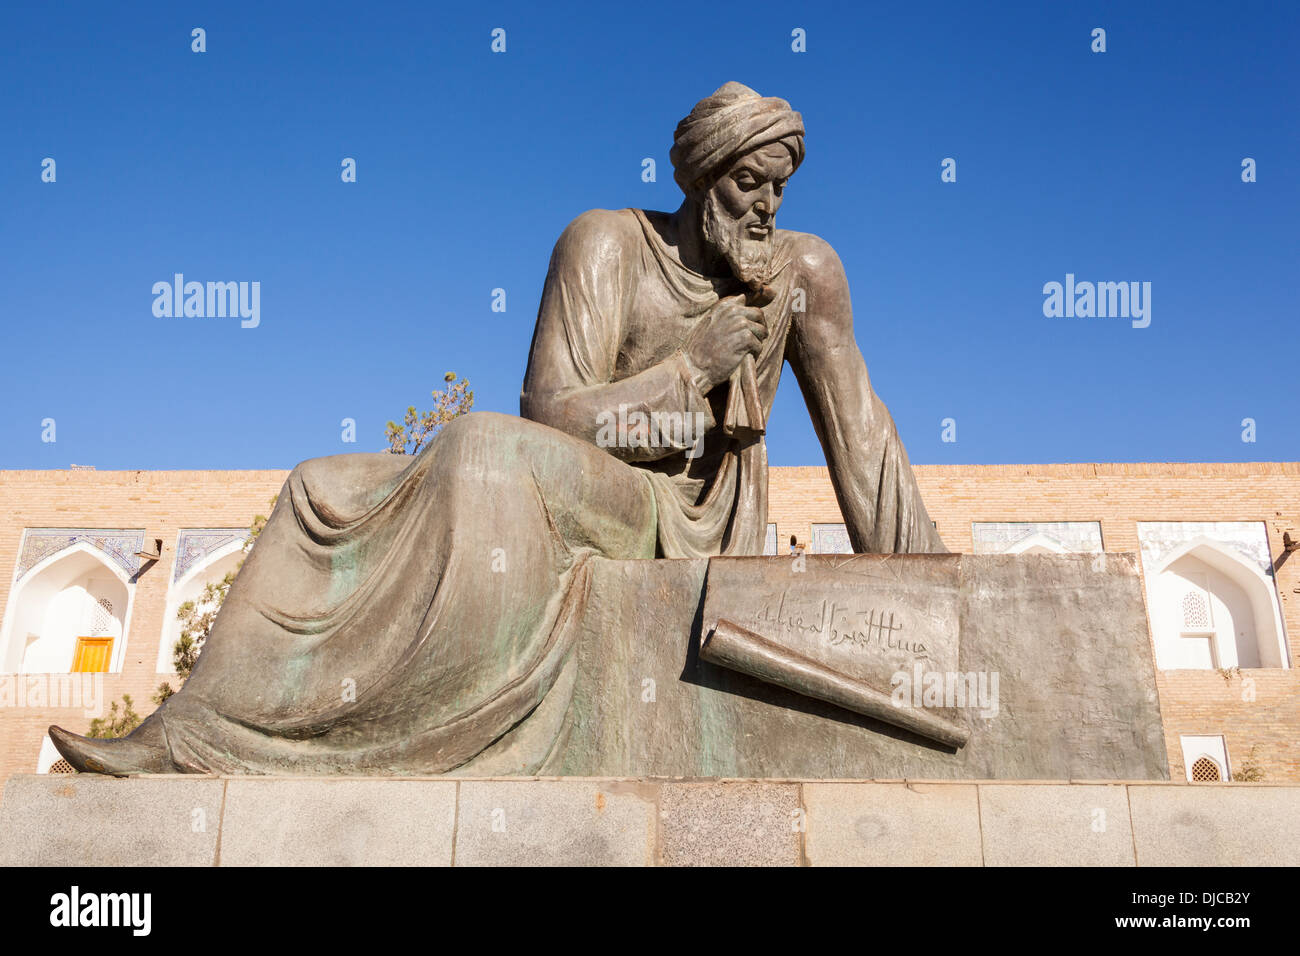 Statua di Al Khwarizmi, un nono secolo il matematico, Ichan Kala, Khiva, Uzbekistan Foto Stock